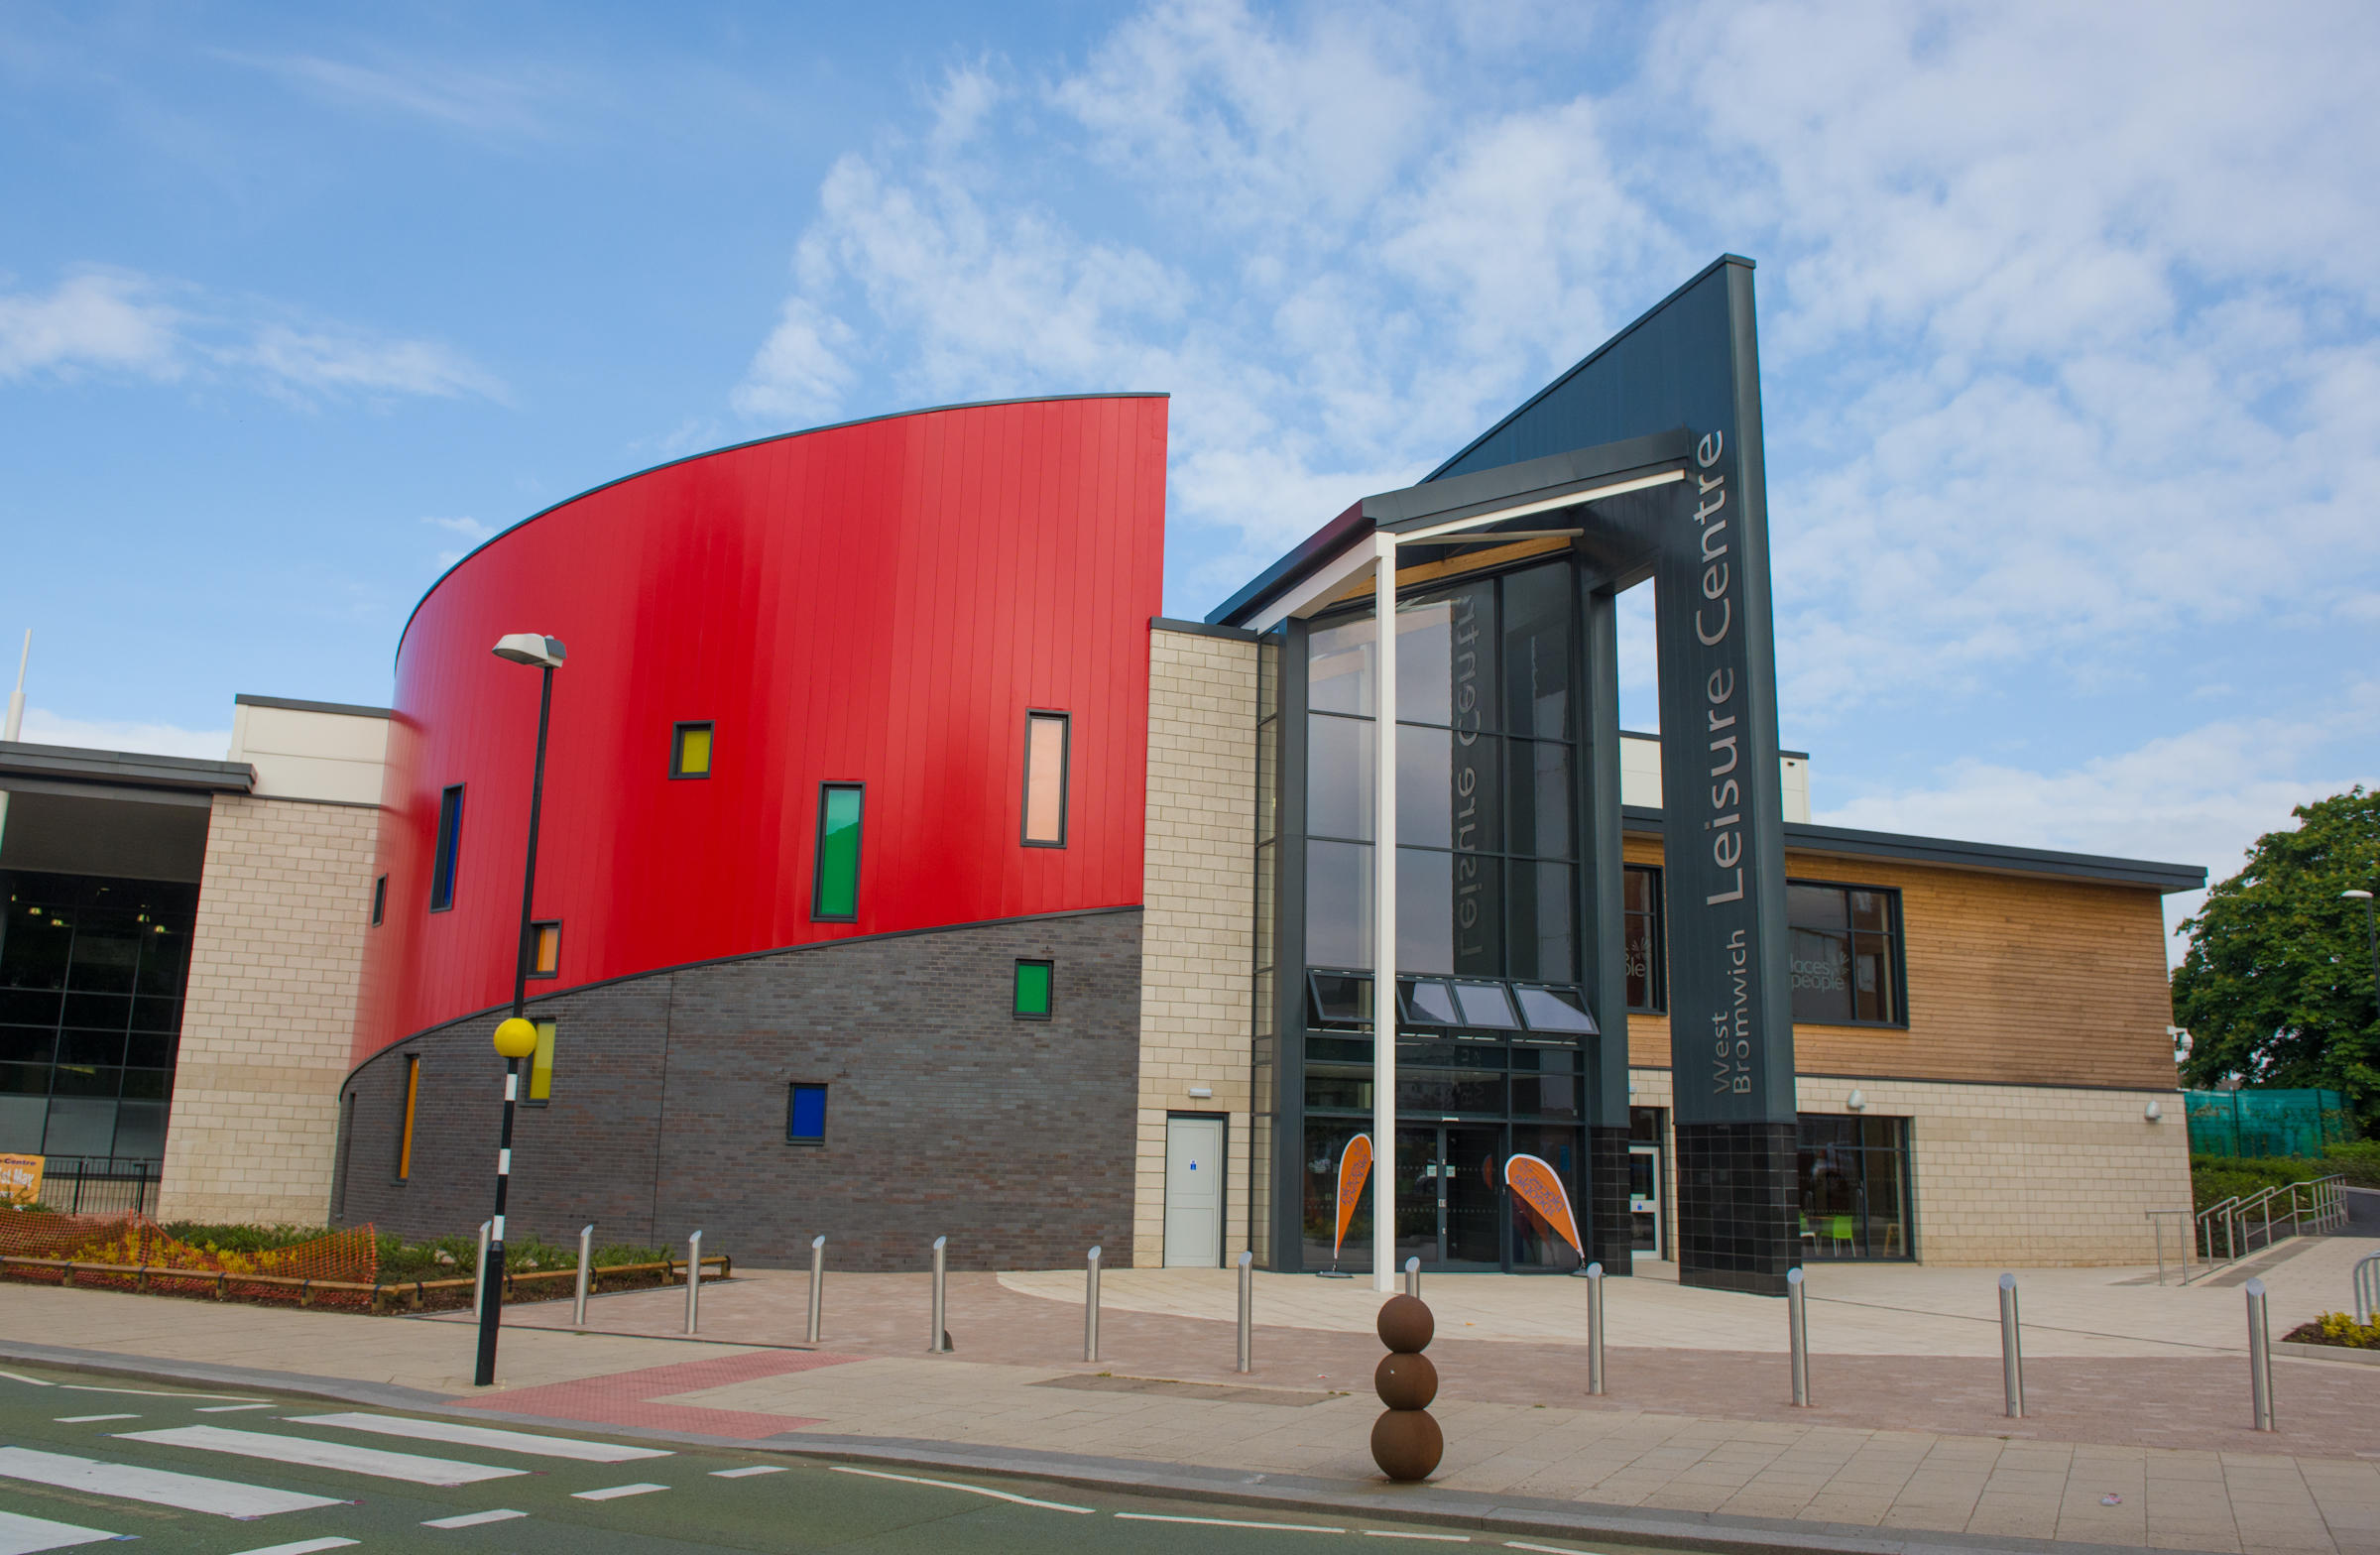 Images West Bromwich Leisure Centre